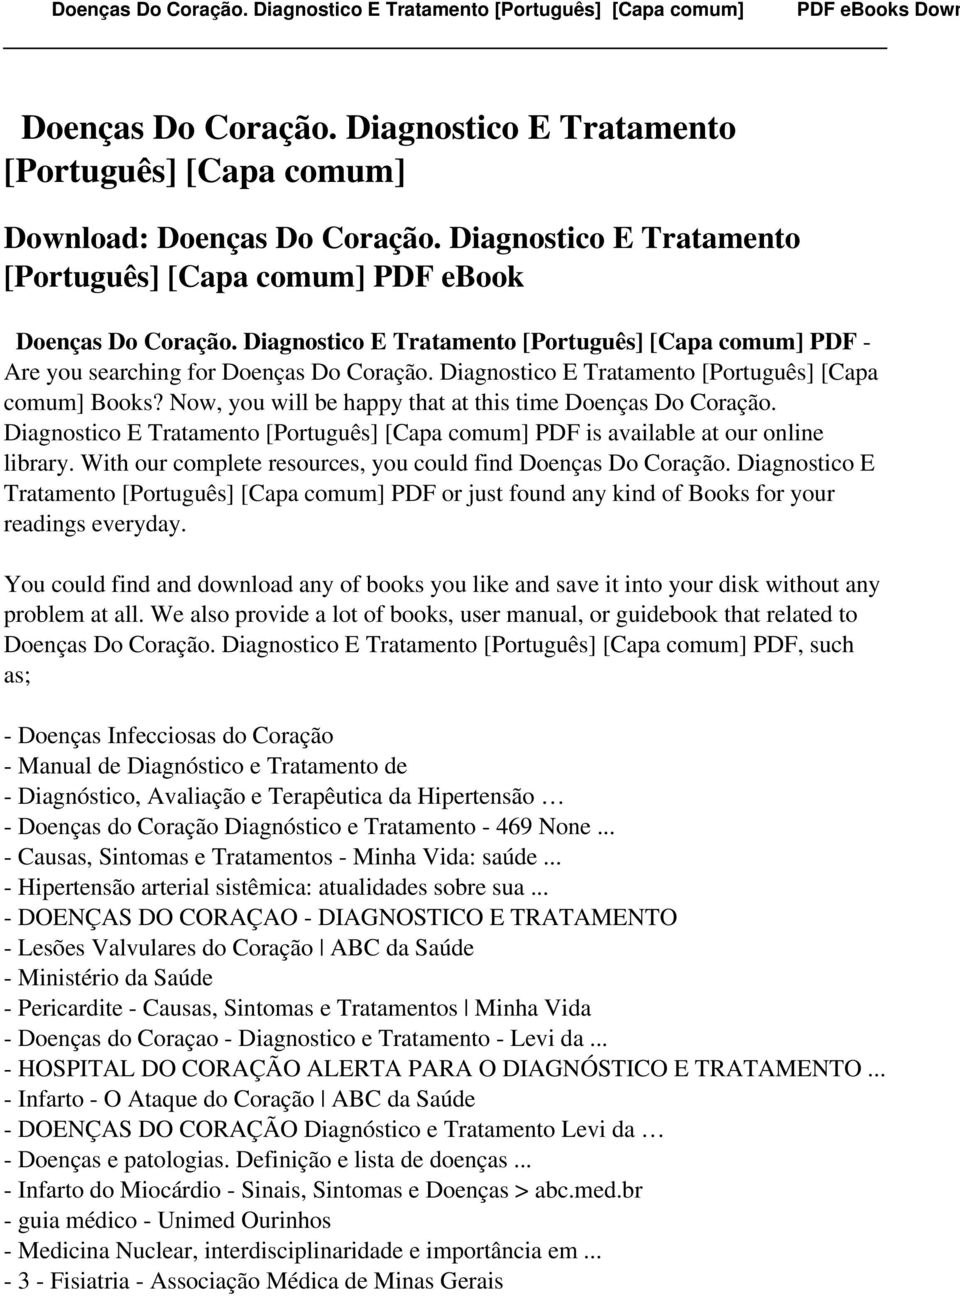 Now, you will be happy that at this time Doenças Do Coração. Diagnostico E Tratamento [Português] [Capa comum] PDF is available at our online library.